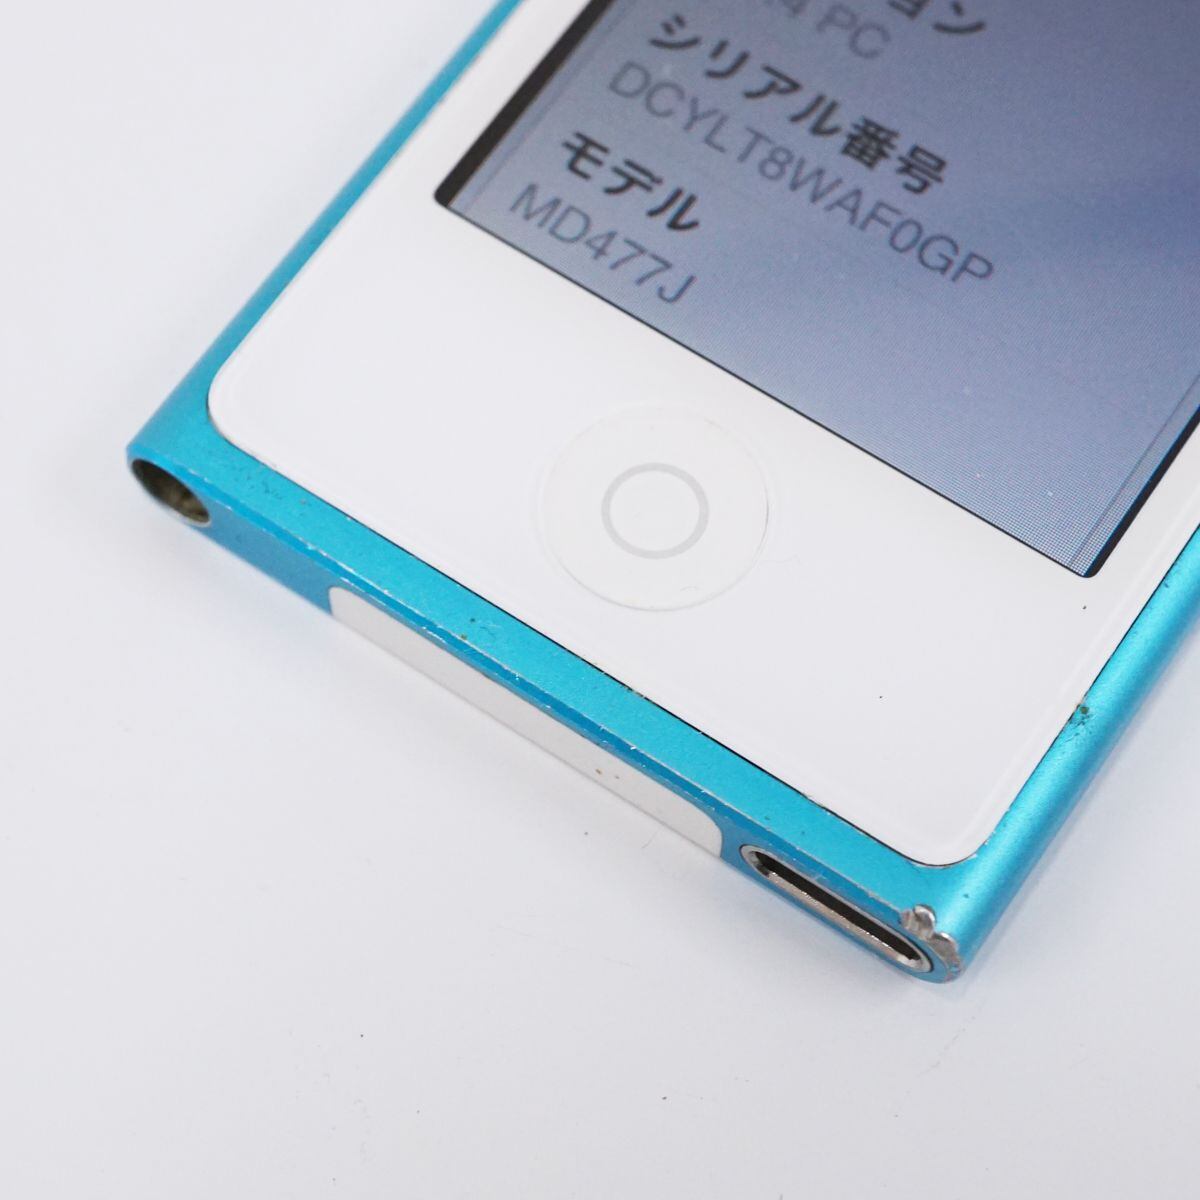 Apple iPod nano 第7世代 MD477J ブルー 16GB